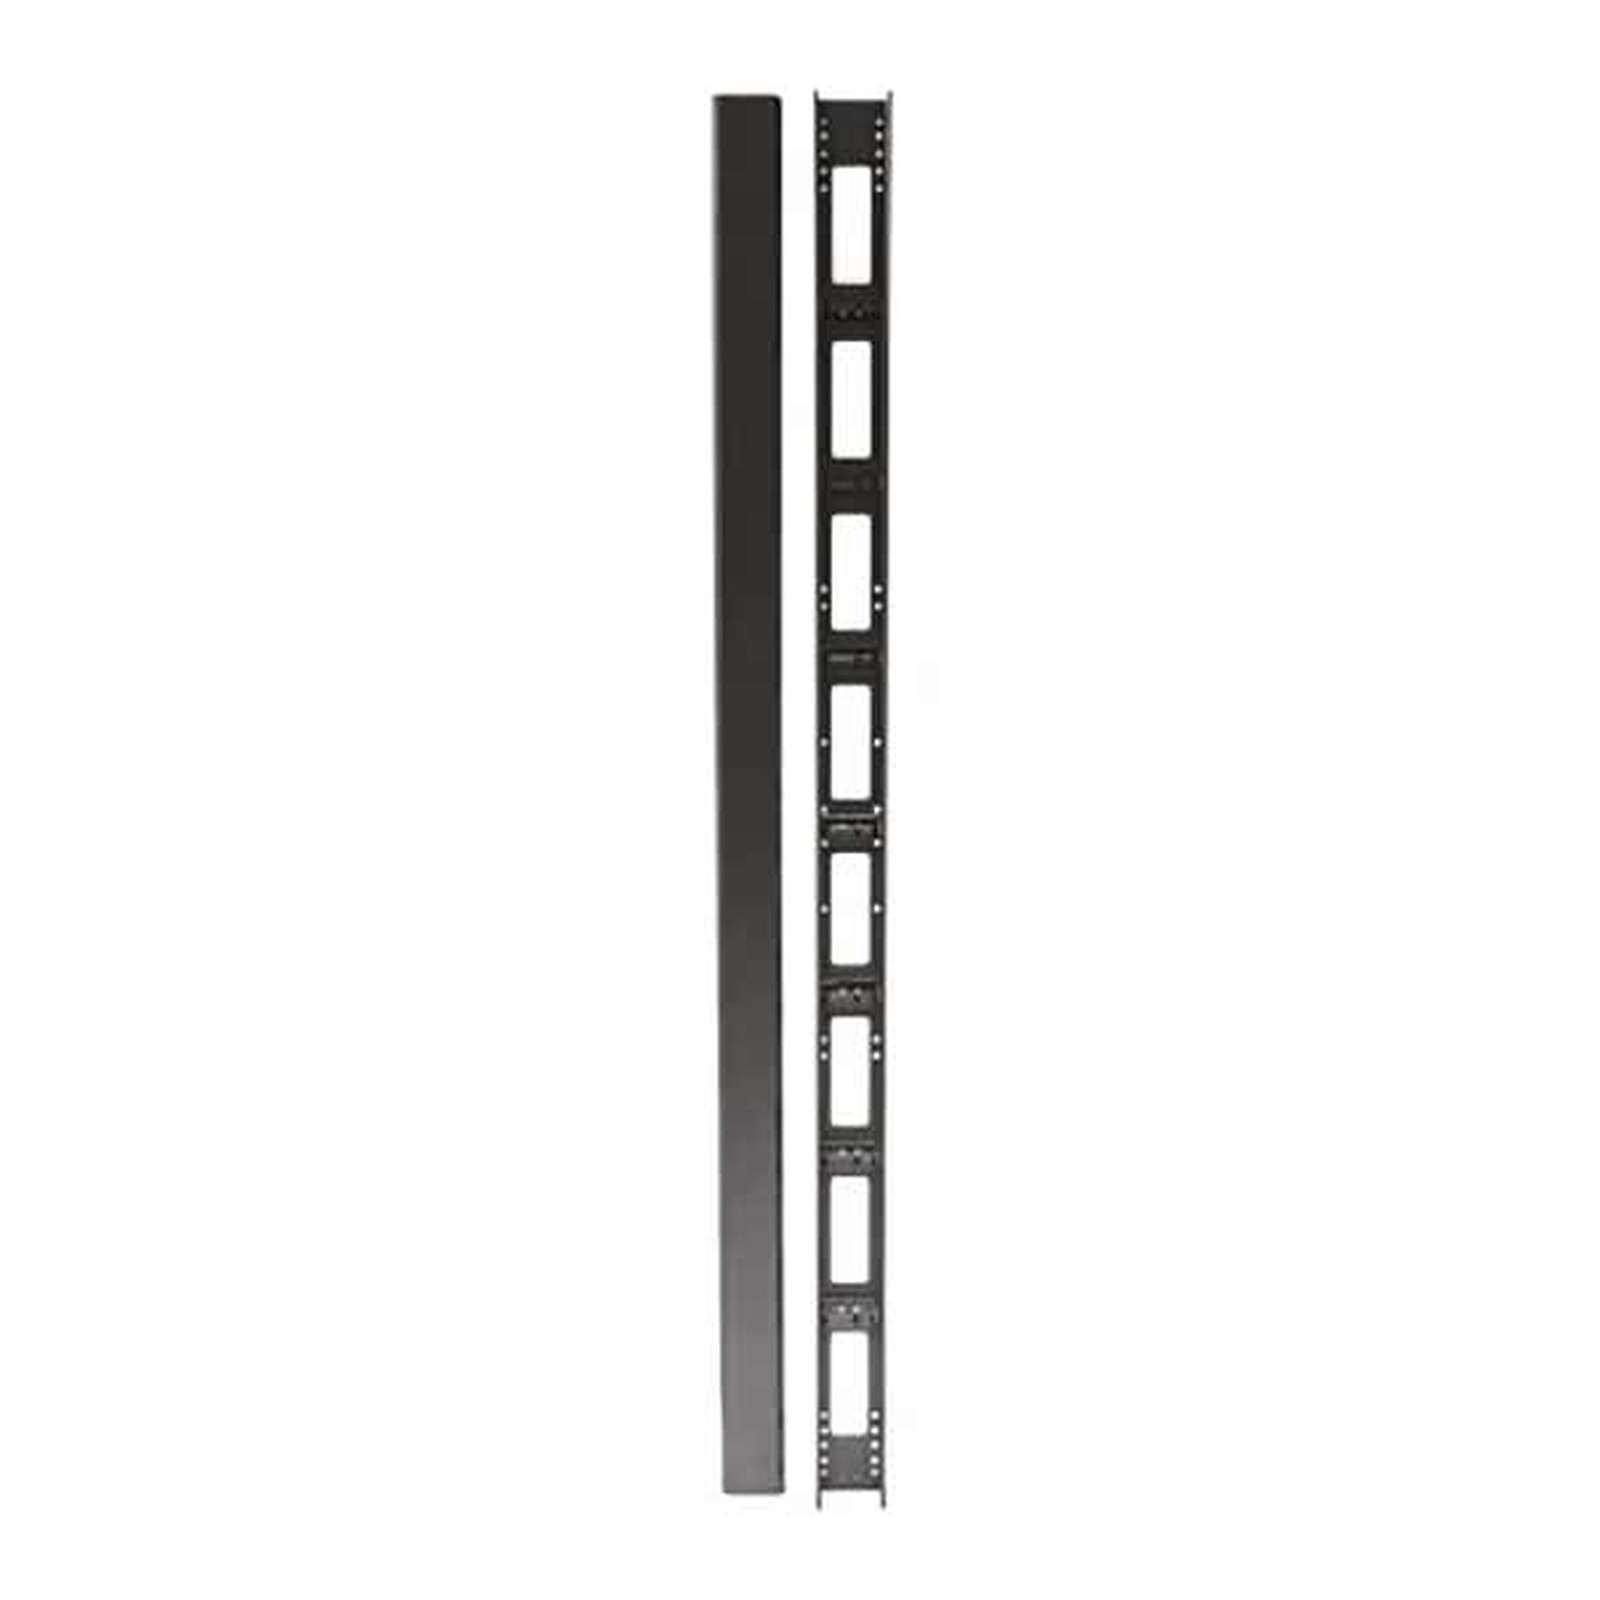 Dexlan Passe câbles vertical pour baies 800 mm 32U avec capot - Noir - Rack  - Garantie 3 ans LDLC